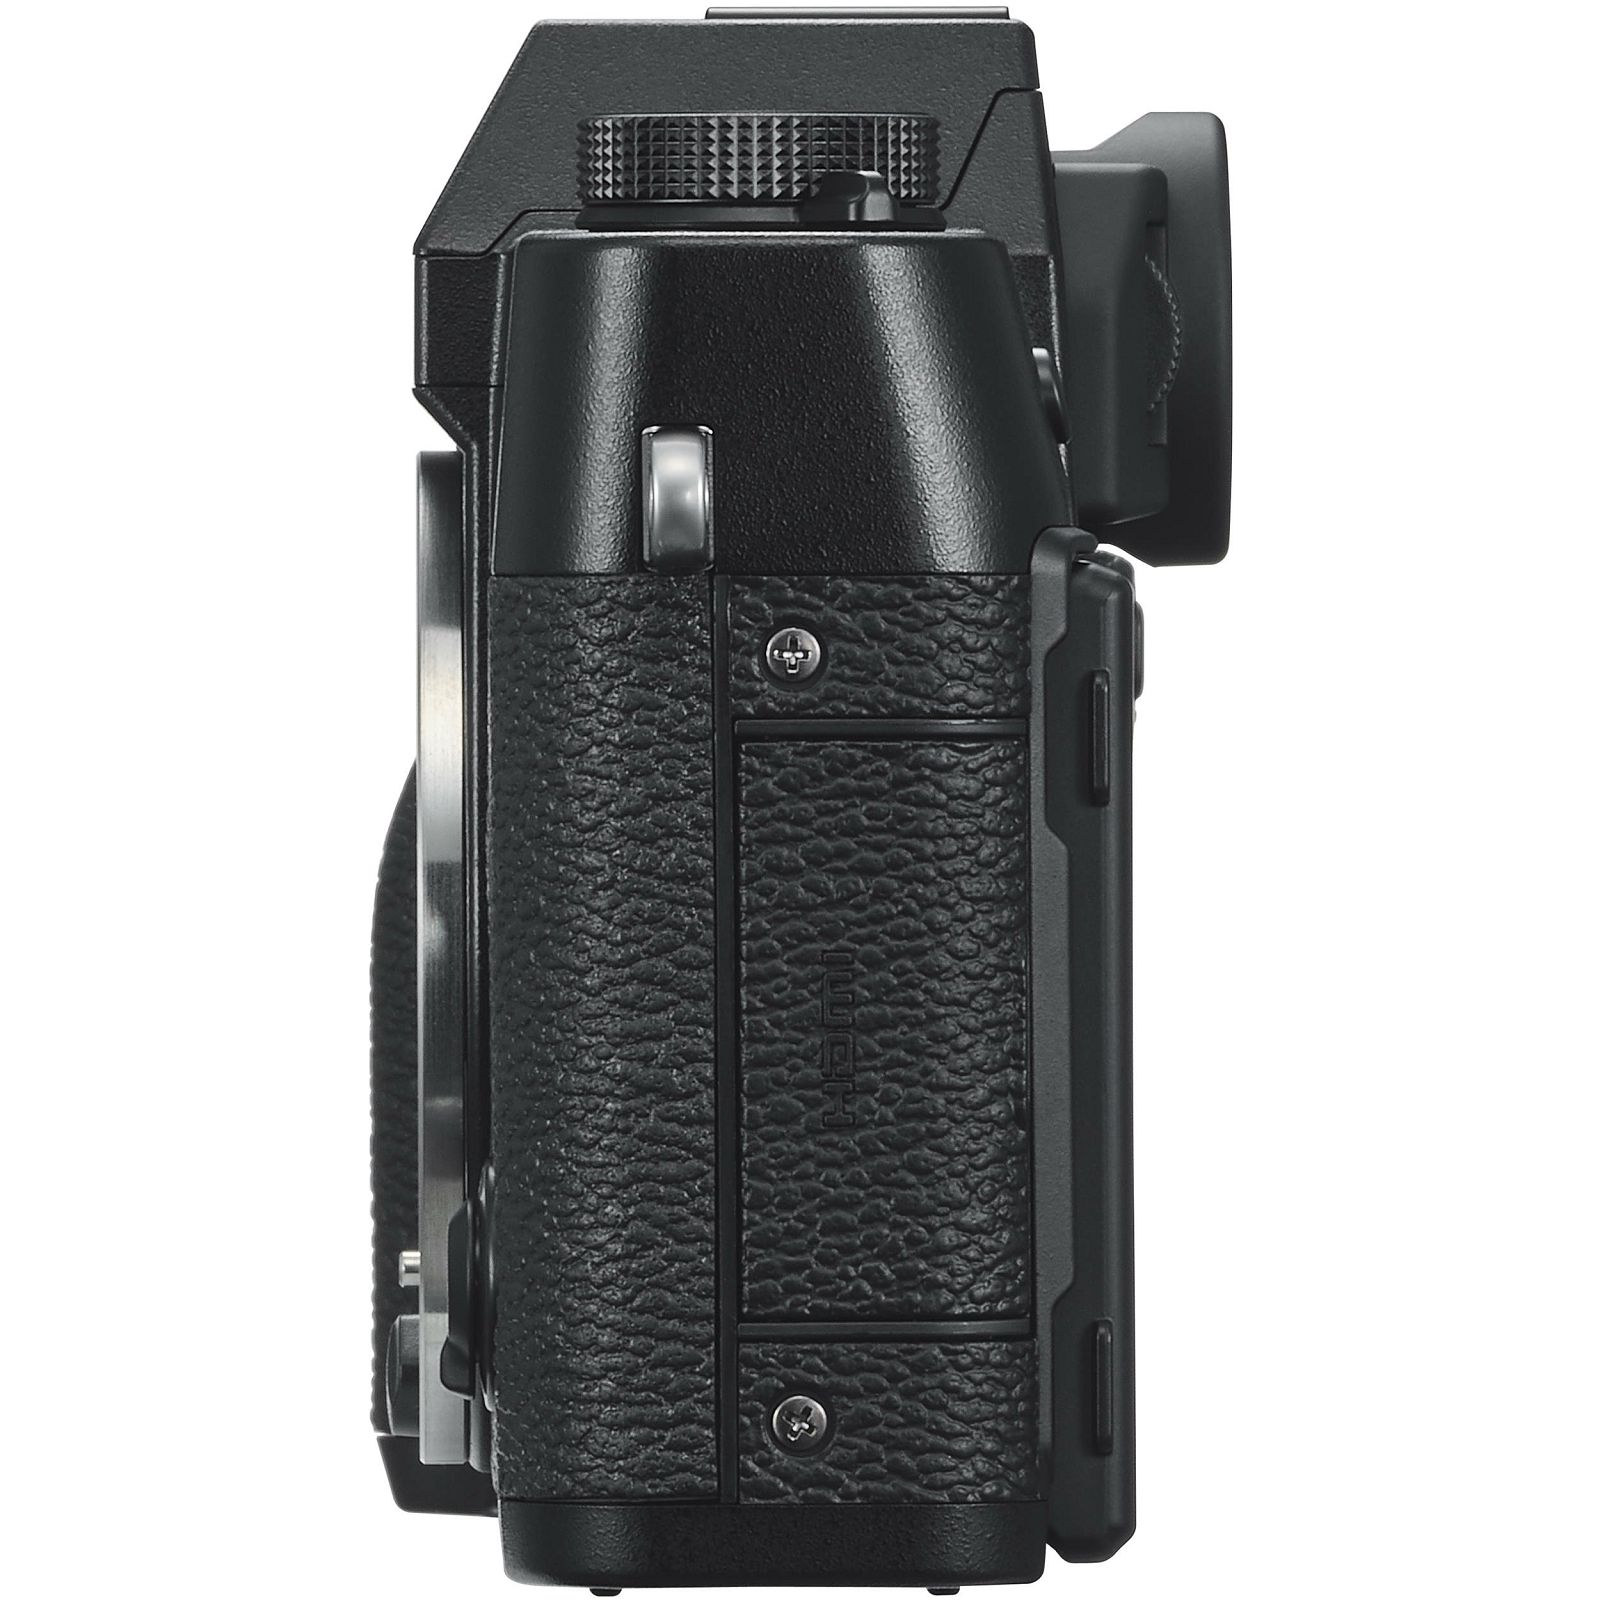 Fujifilm X-T30 + XC 15-45 f/3.5-5.6 OIS PZ KIT Black crni digitalni mirrorless fotoaparat s objektivom 15-45mm Fuji (16619267)